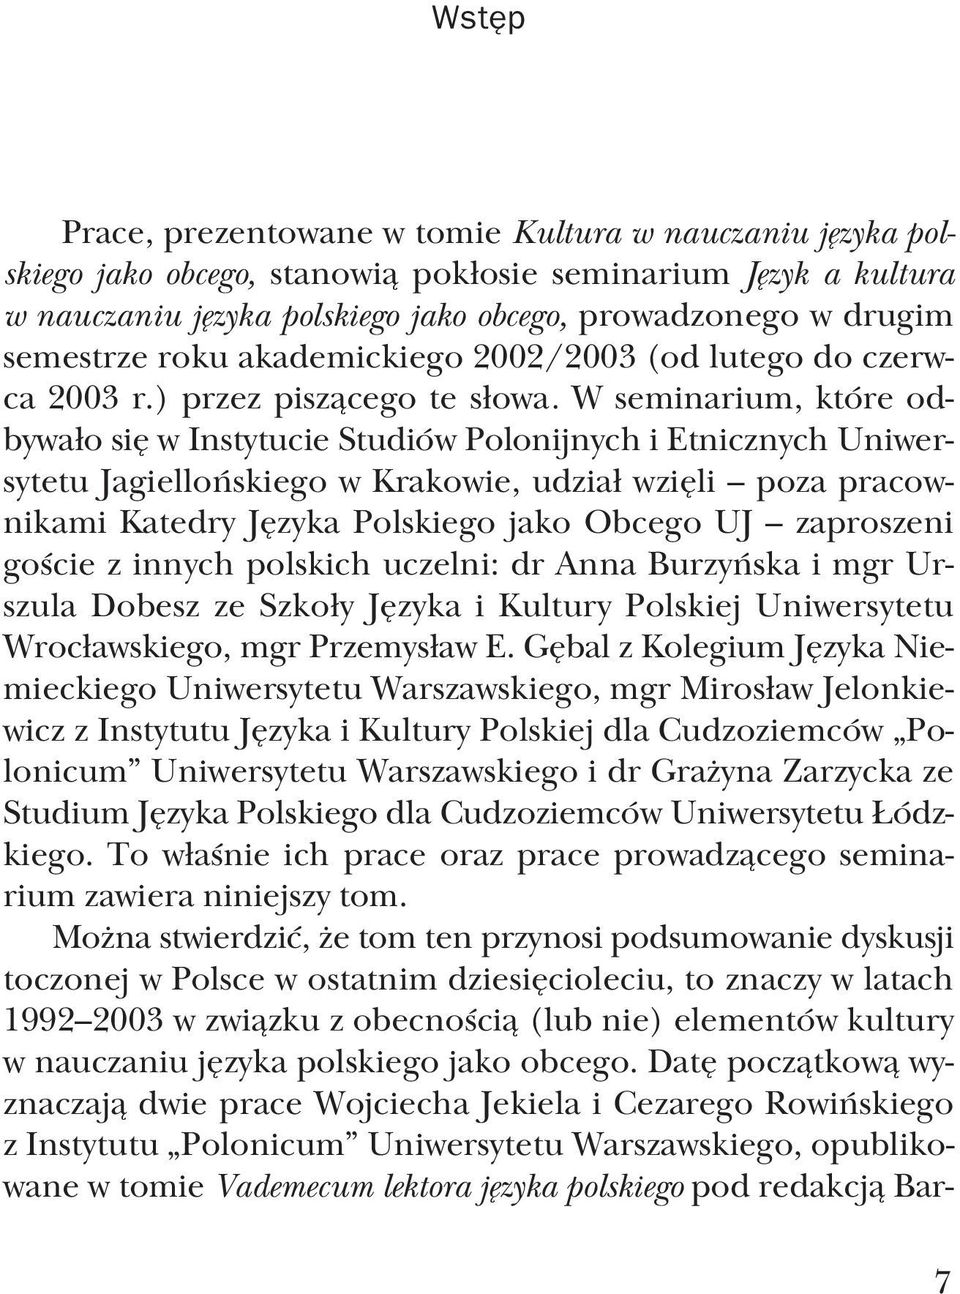 W seminarium, które od bywało się w Instytucie Studiów Polonijnych i Etnicznych Uniwer sytetu Jagiellońskiego w Krakowie, udział wzięli poza pracow nikami Katedry Języka Polskiego jako Obcego UJ